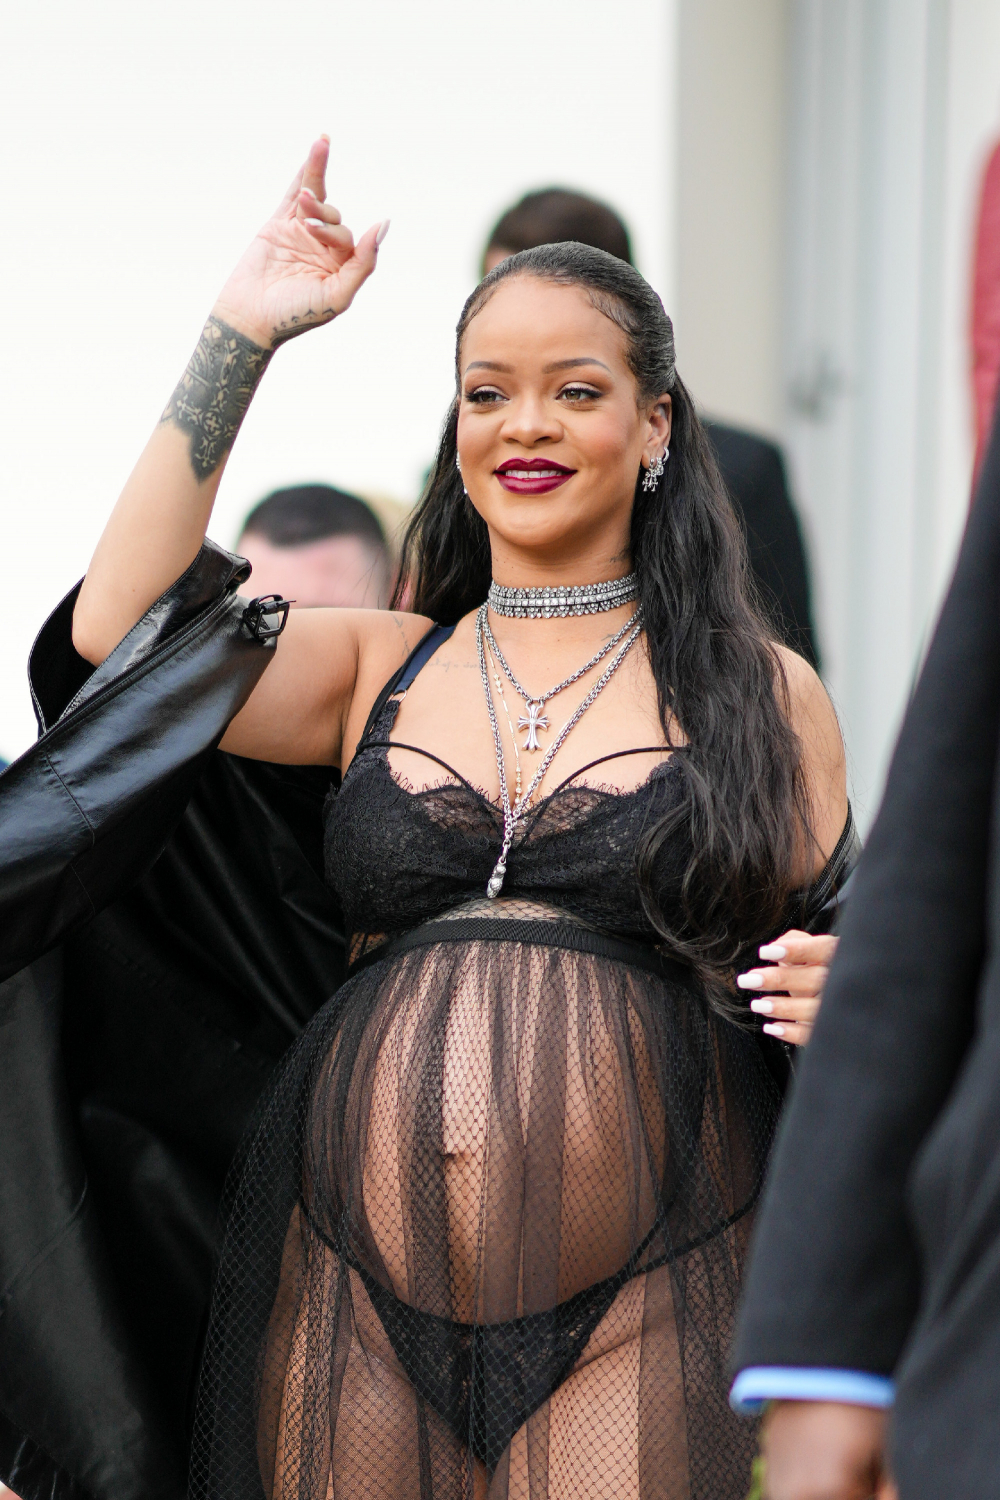 Megvesznek a rajongók Rihanna új pocakos fotójáért